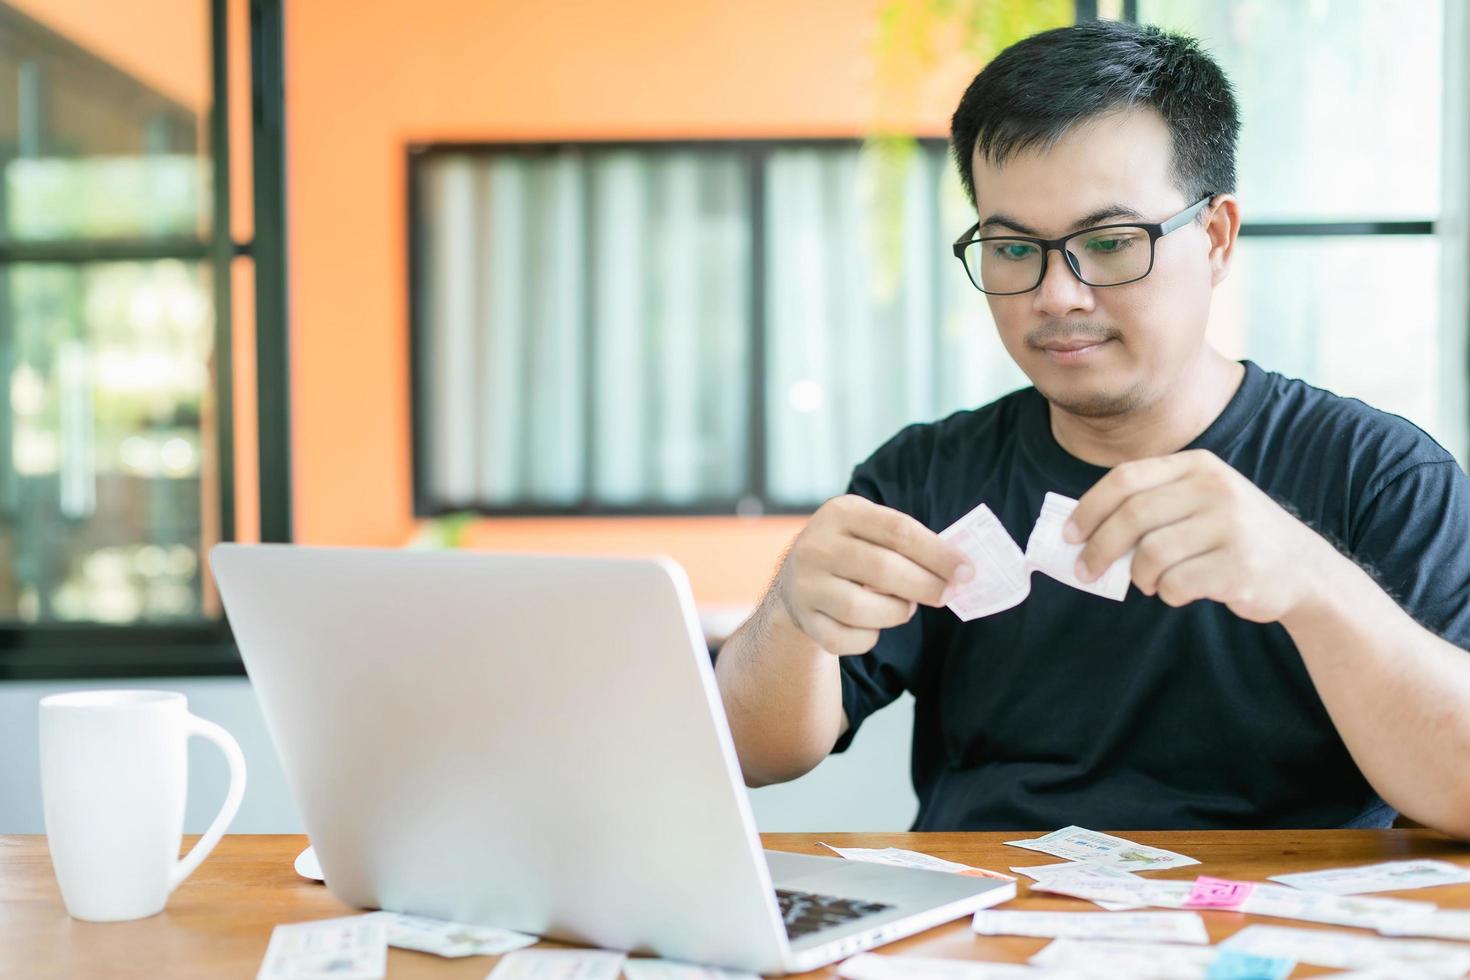 sentirse fracasado por el concepto de lotería del gobierno, los tailandeses revisando el resultado de la lotería del gobierno de Tailandia en una computadora portátil y sintiéndose fracasados o tristes foto